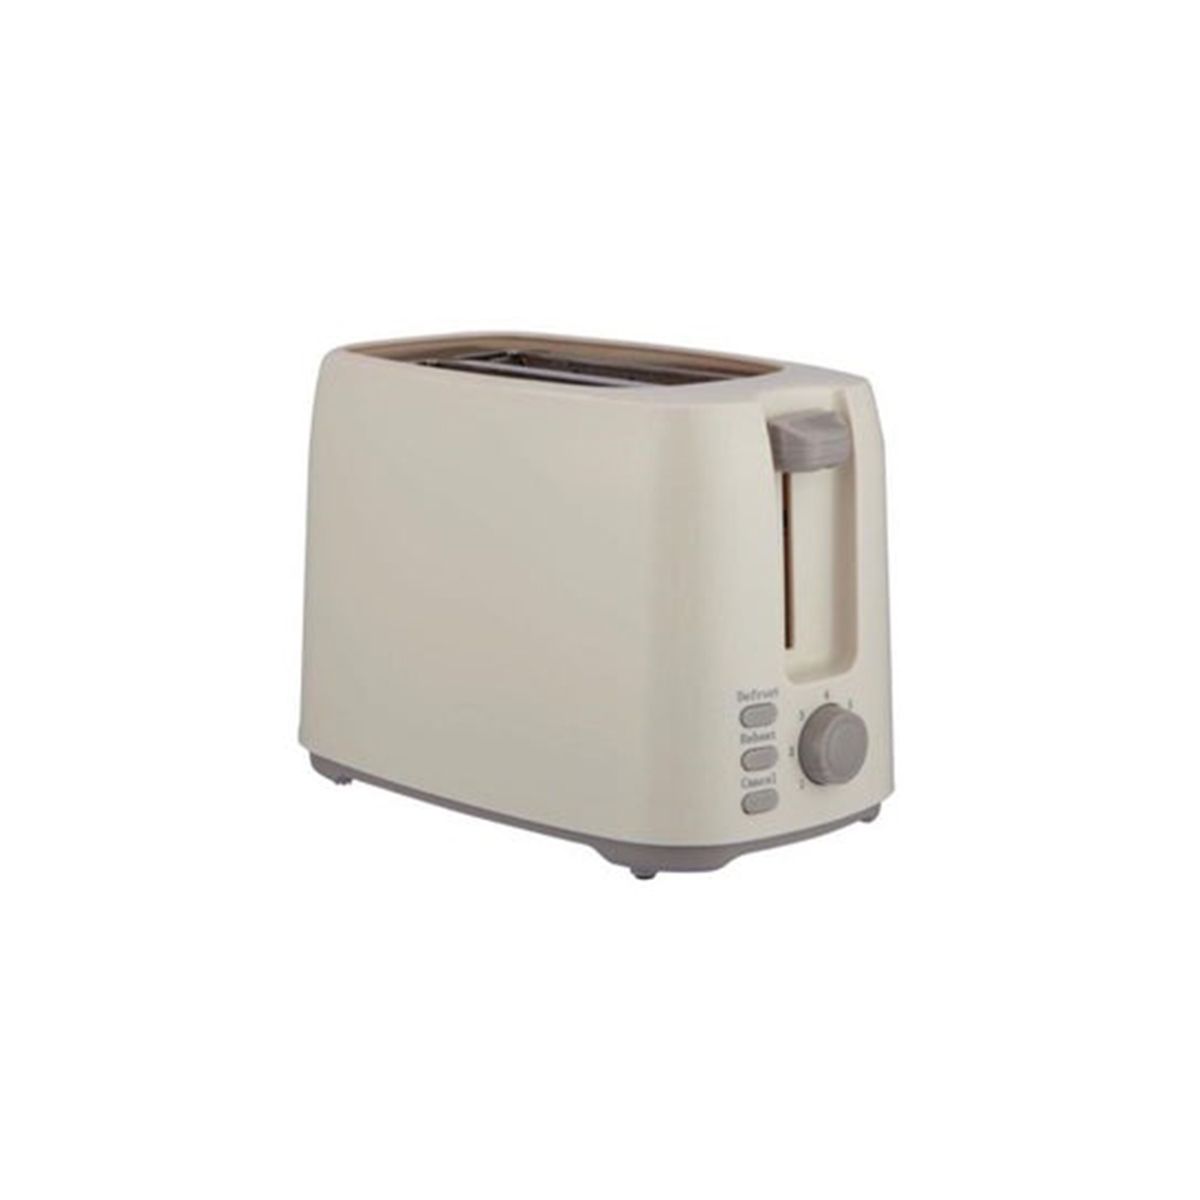 Koolen Double Toaster 750 Watt, White - 800104002